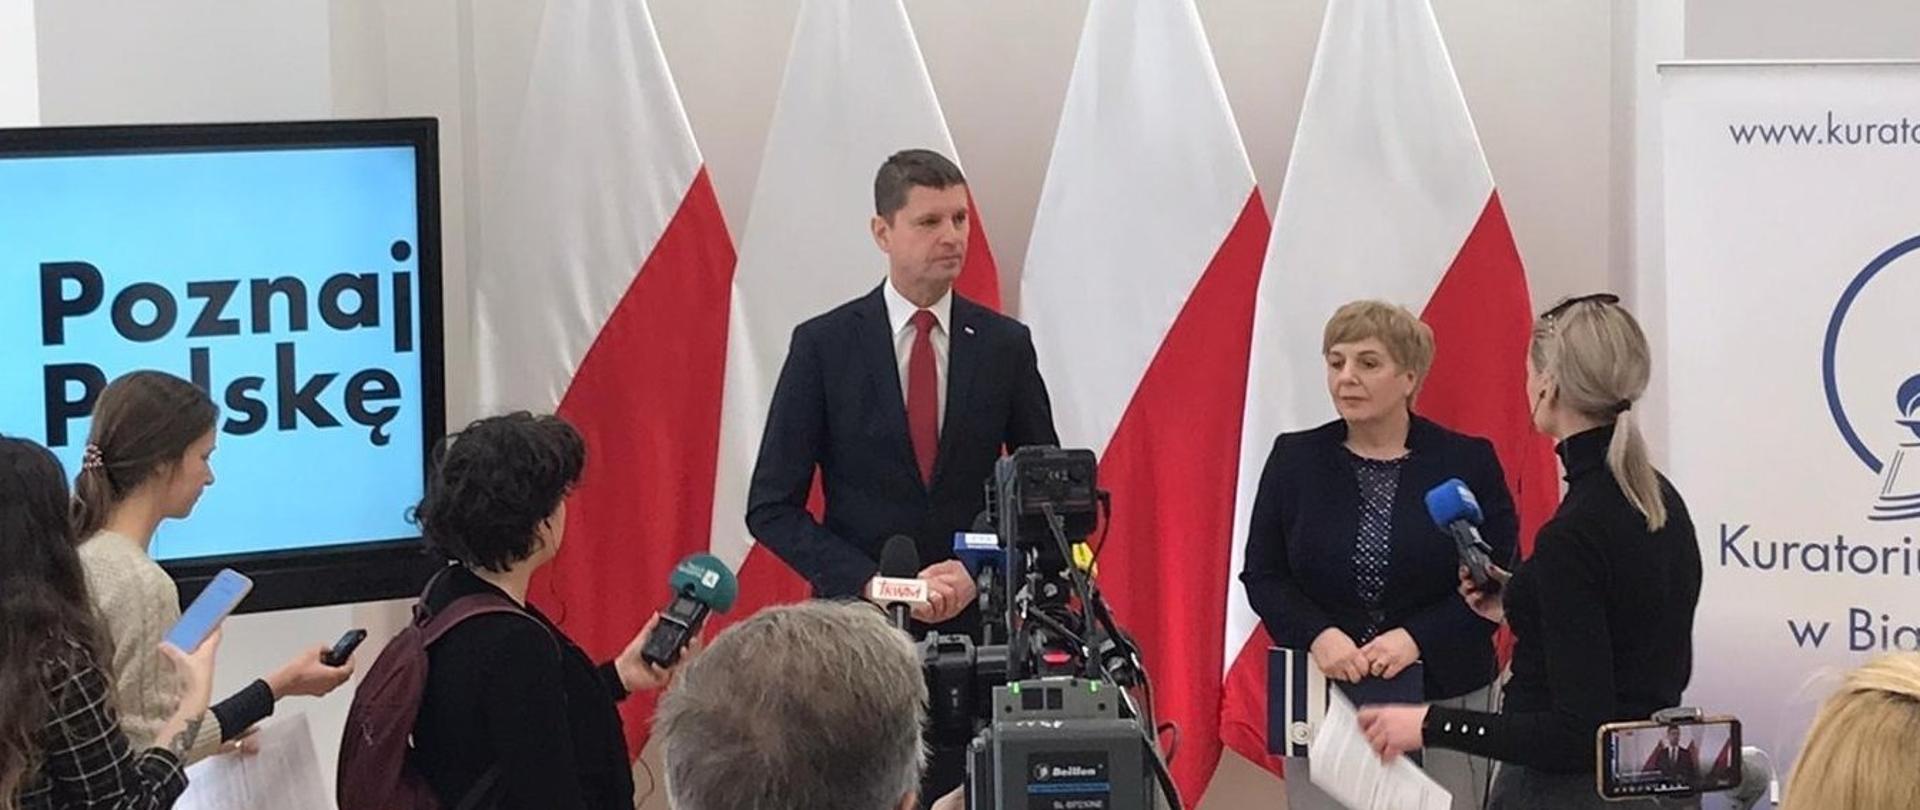 Wiceminister Piontkowski stoi przed dużą kamerą i mówi, obok niego stoi kilka osób, za nimi cztery polskie flagi i duży monitor wyświetlający napis Poznaj Polskę na jasnoniebieskim tle.